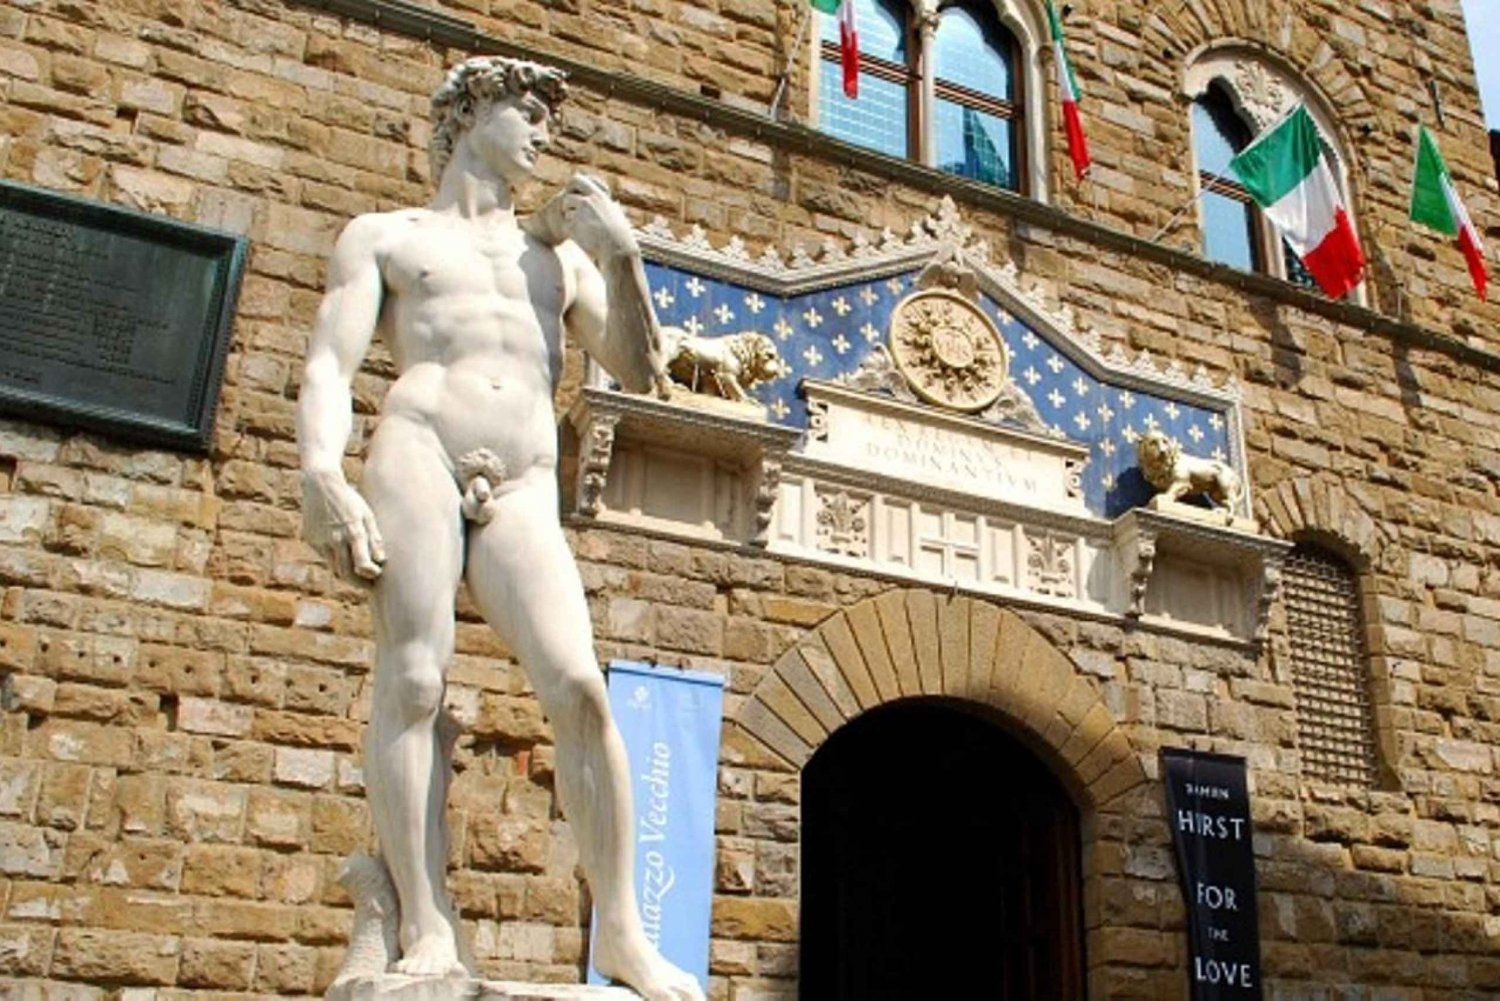 Palazzo Vecchio: Semi-Private Tour